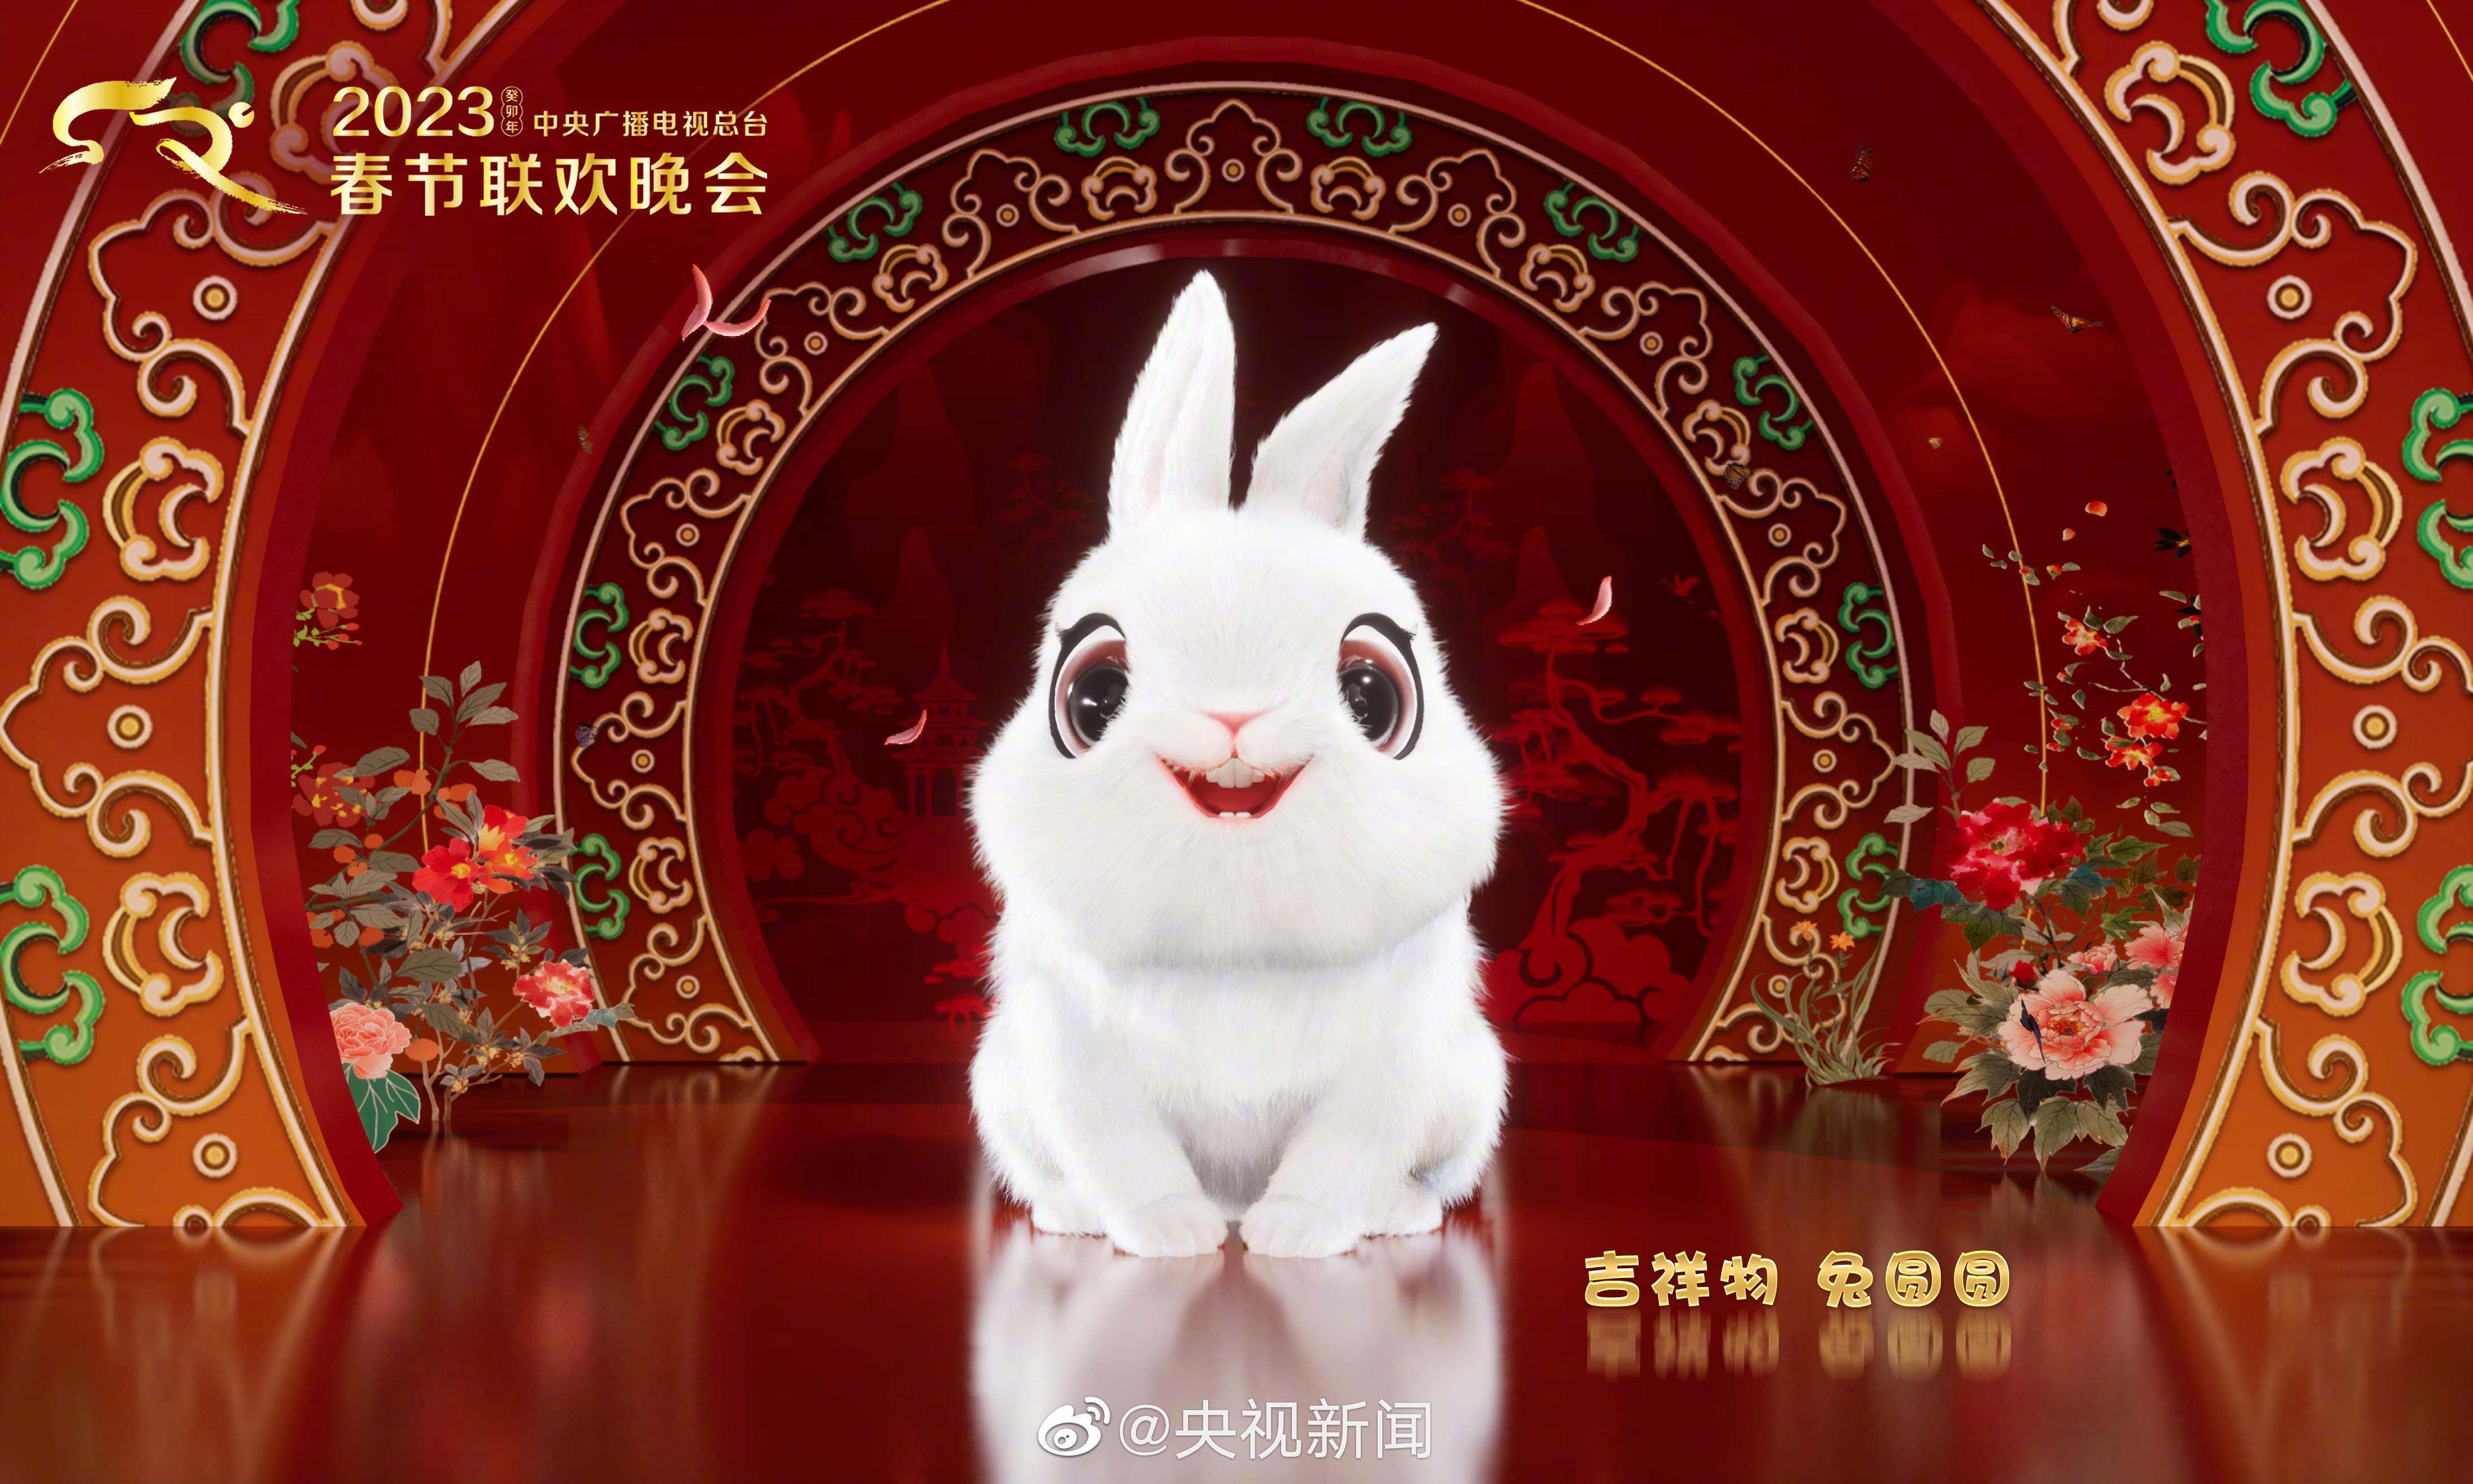 2023 年总台春晚标识和吉祥物「兔圆圆」官宣